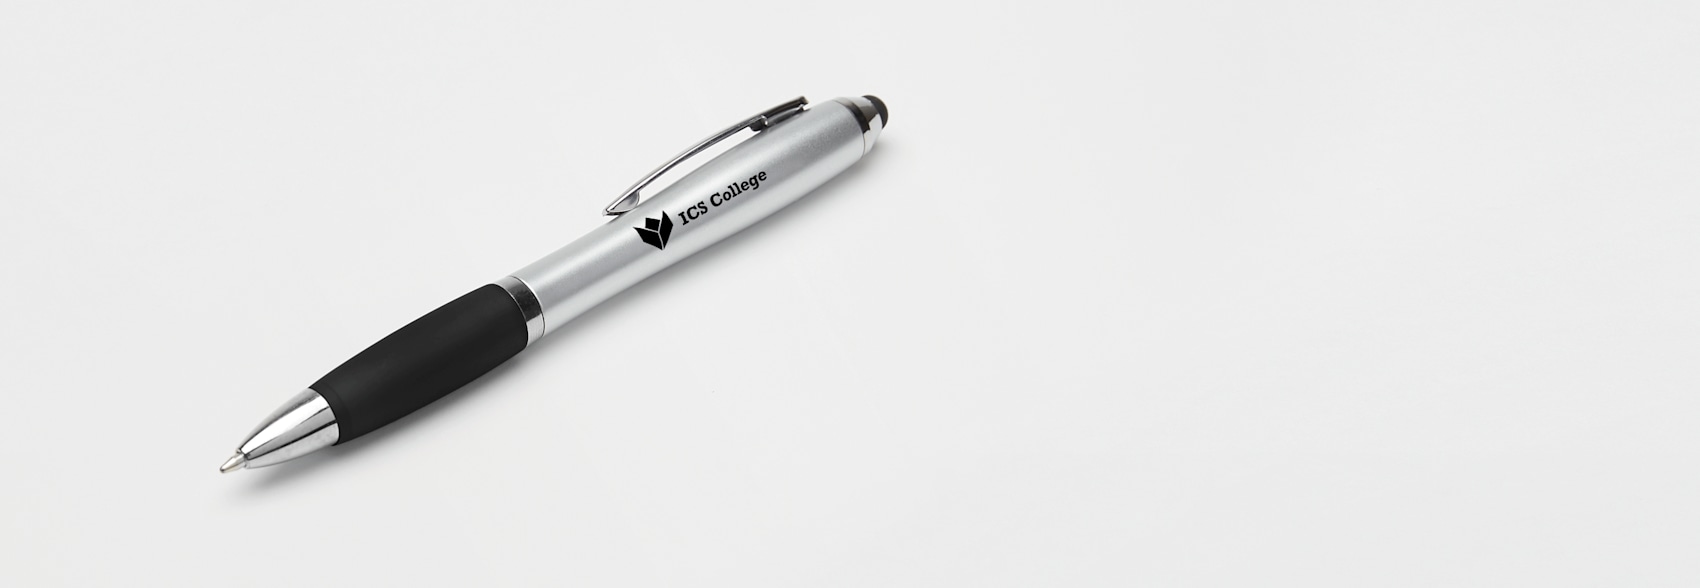 Nash reklamkulspetspenna med stylus 1